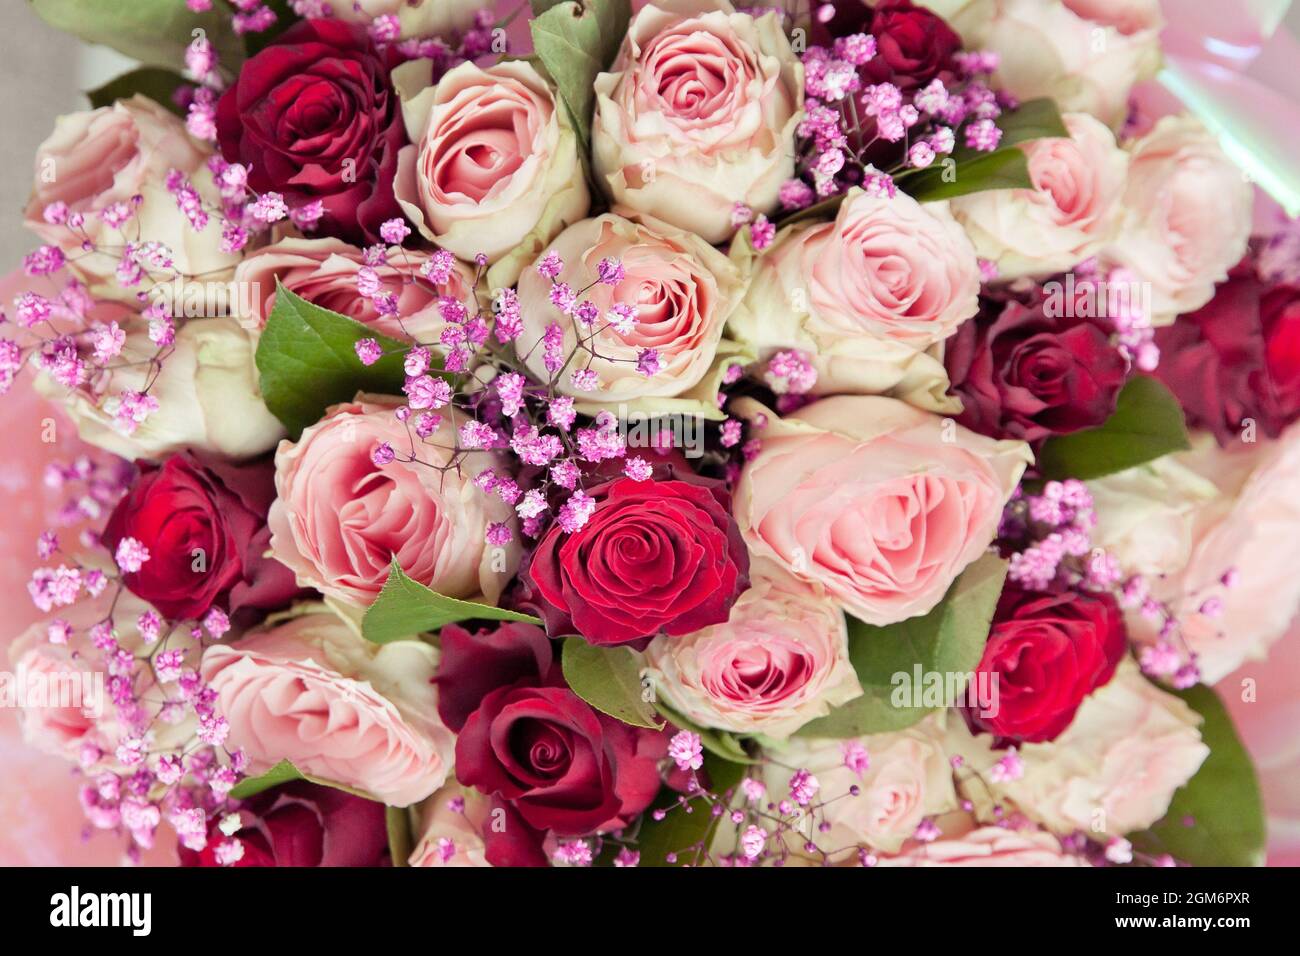 Großer Rosenstrauß. Schöner Strauß Rosen. Hintergrund aus rosa Rosen  Stockfotografie - Alamy